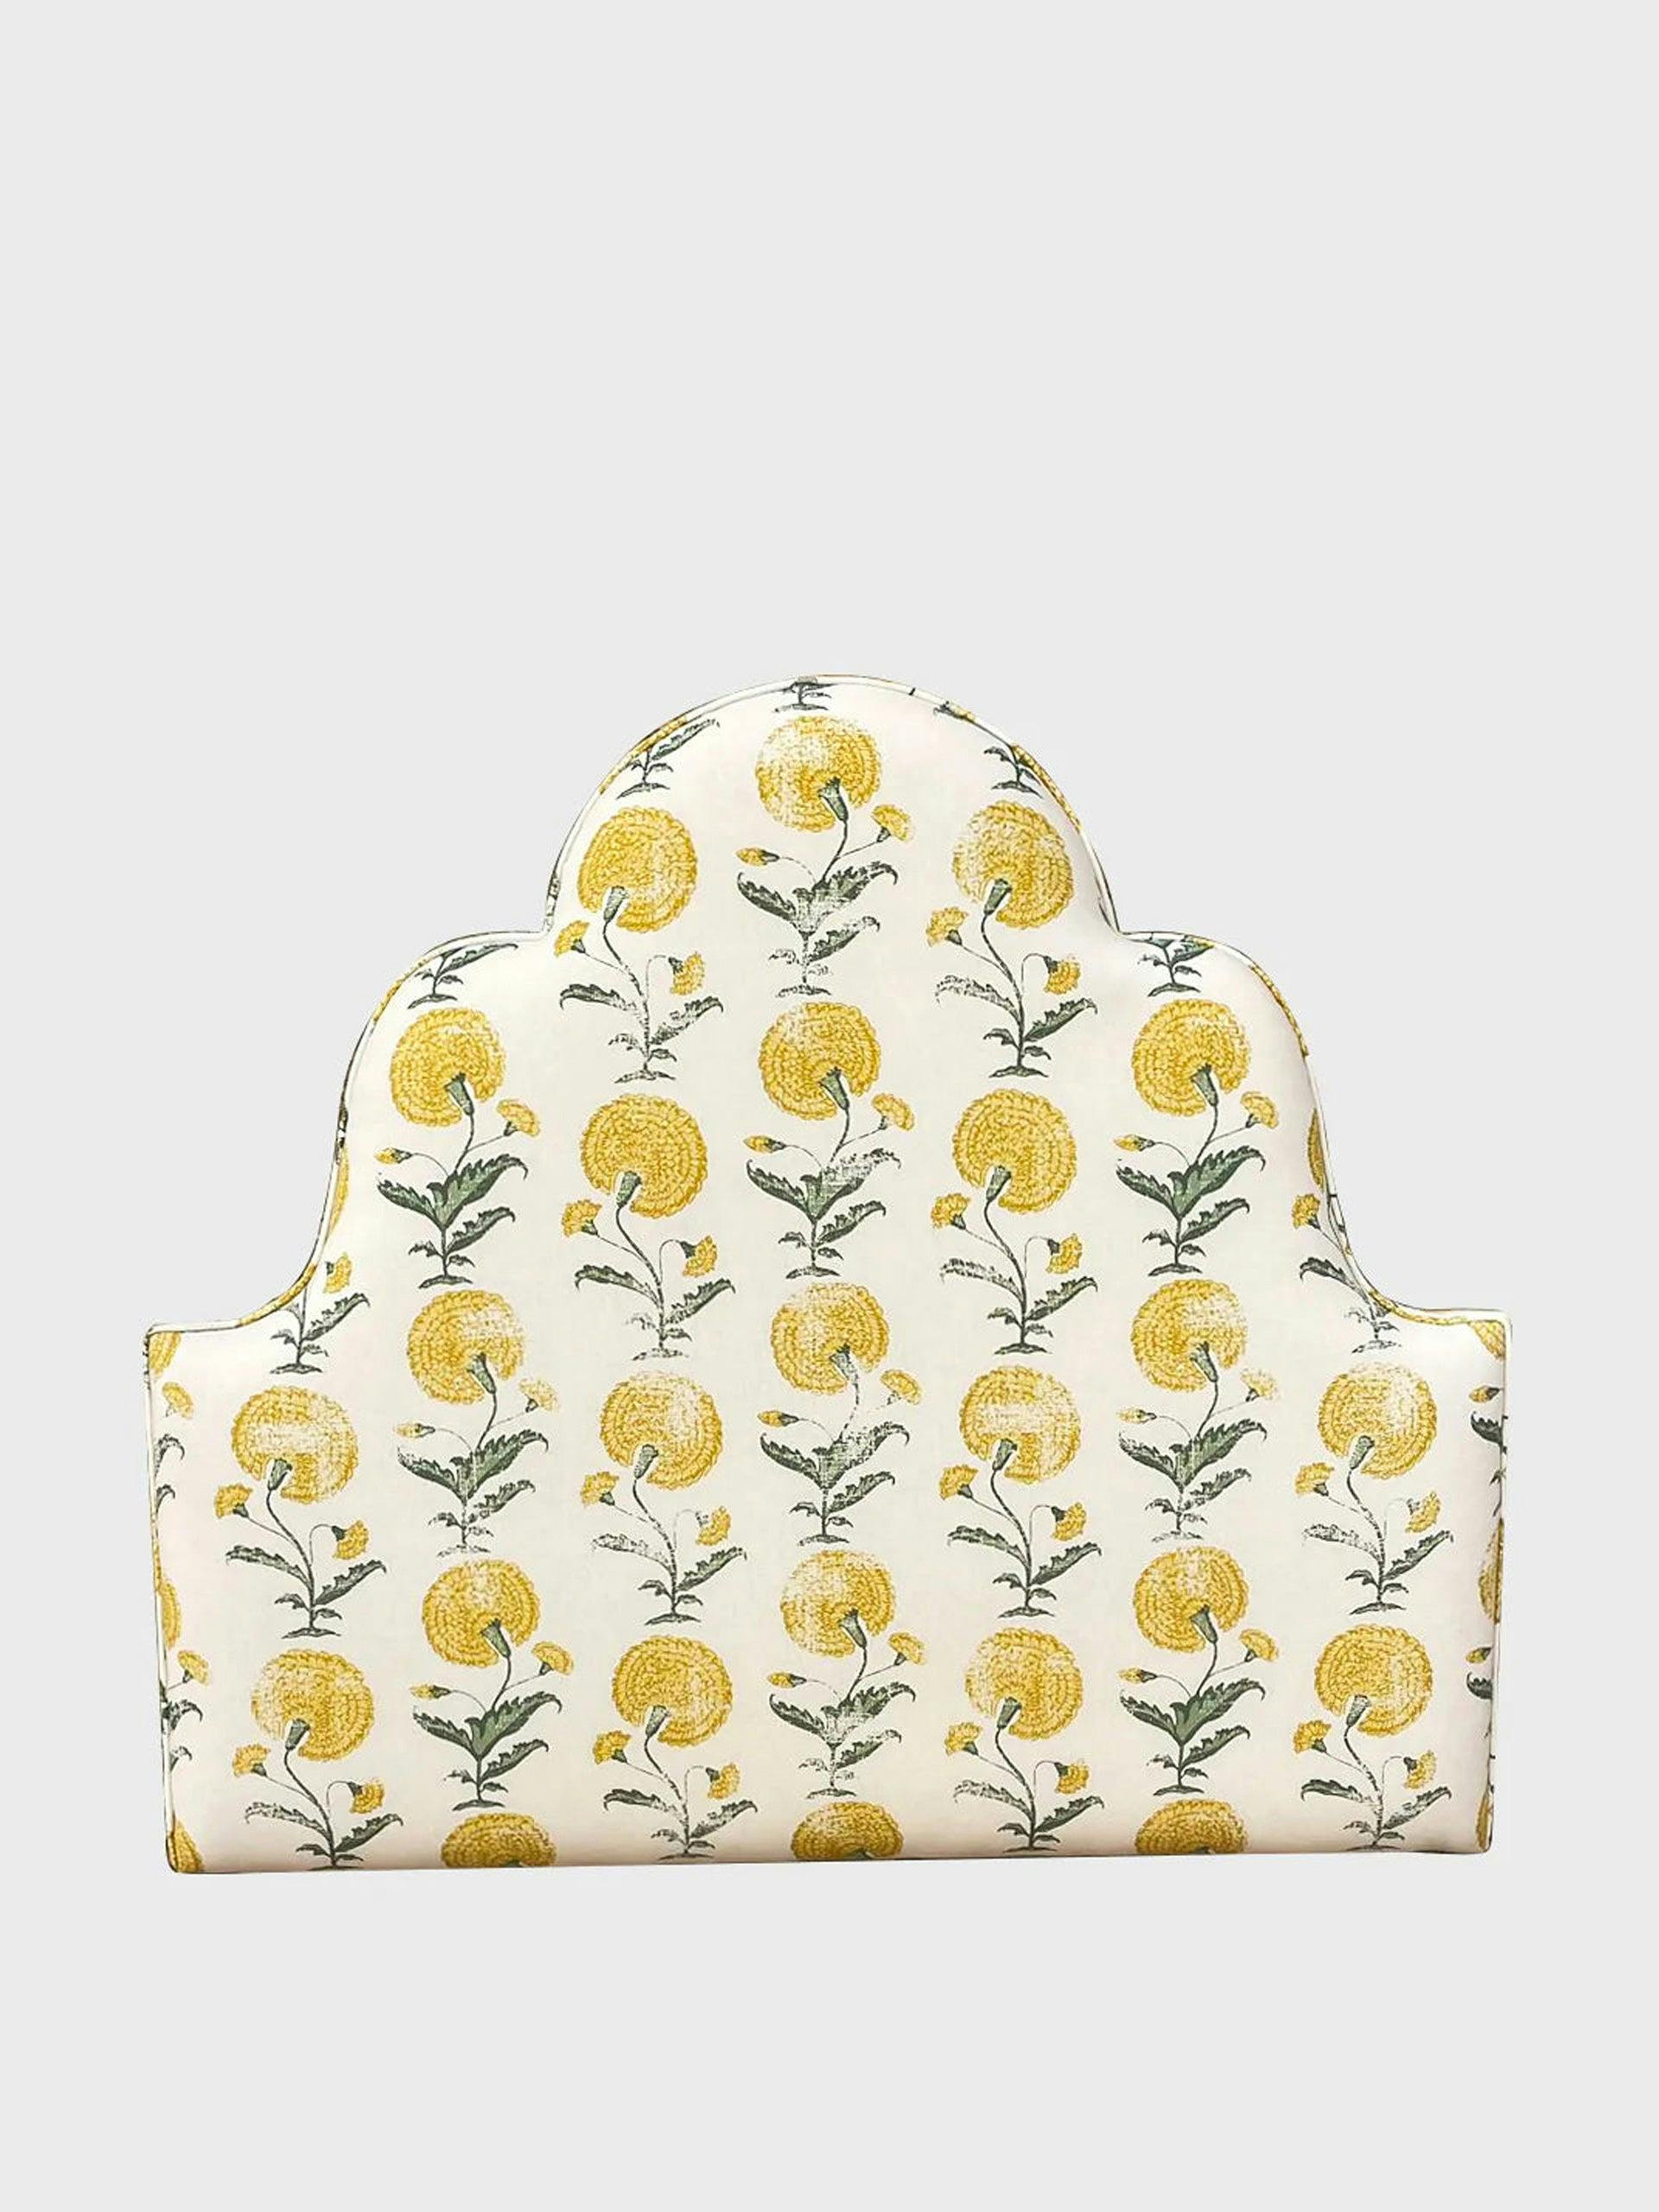 Single bed headboard in ochre poppy